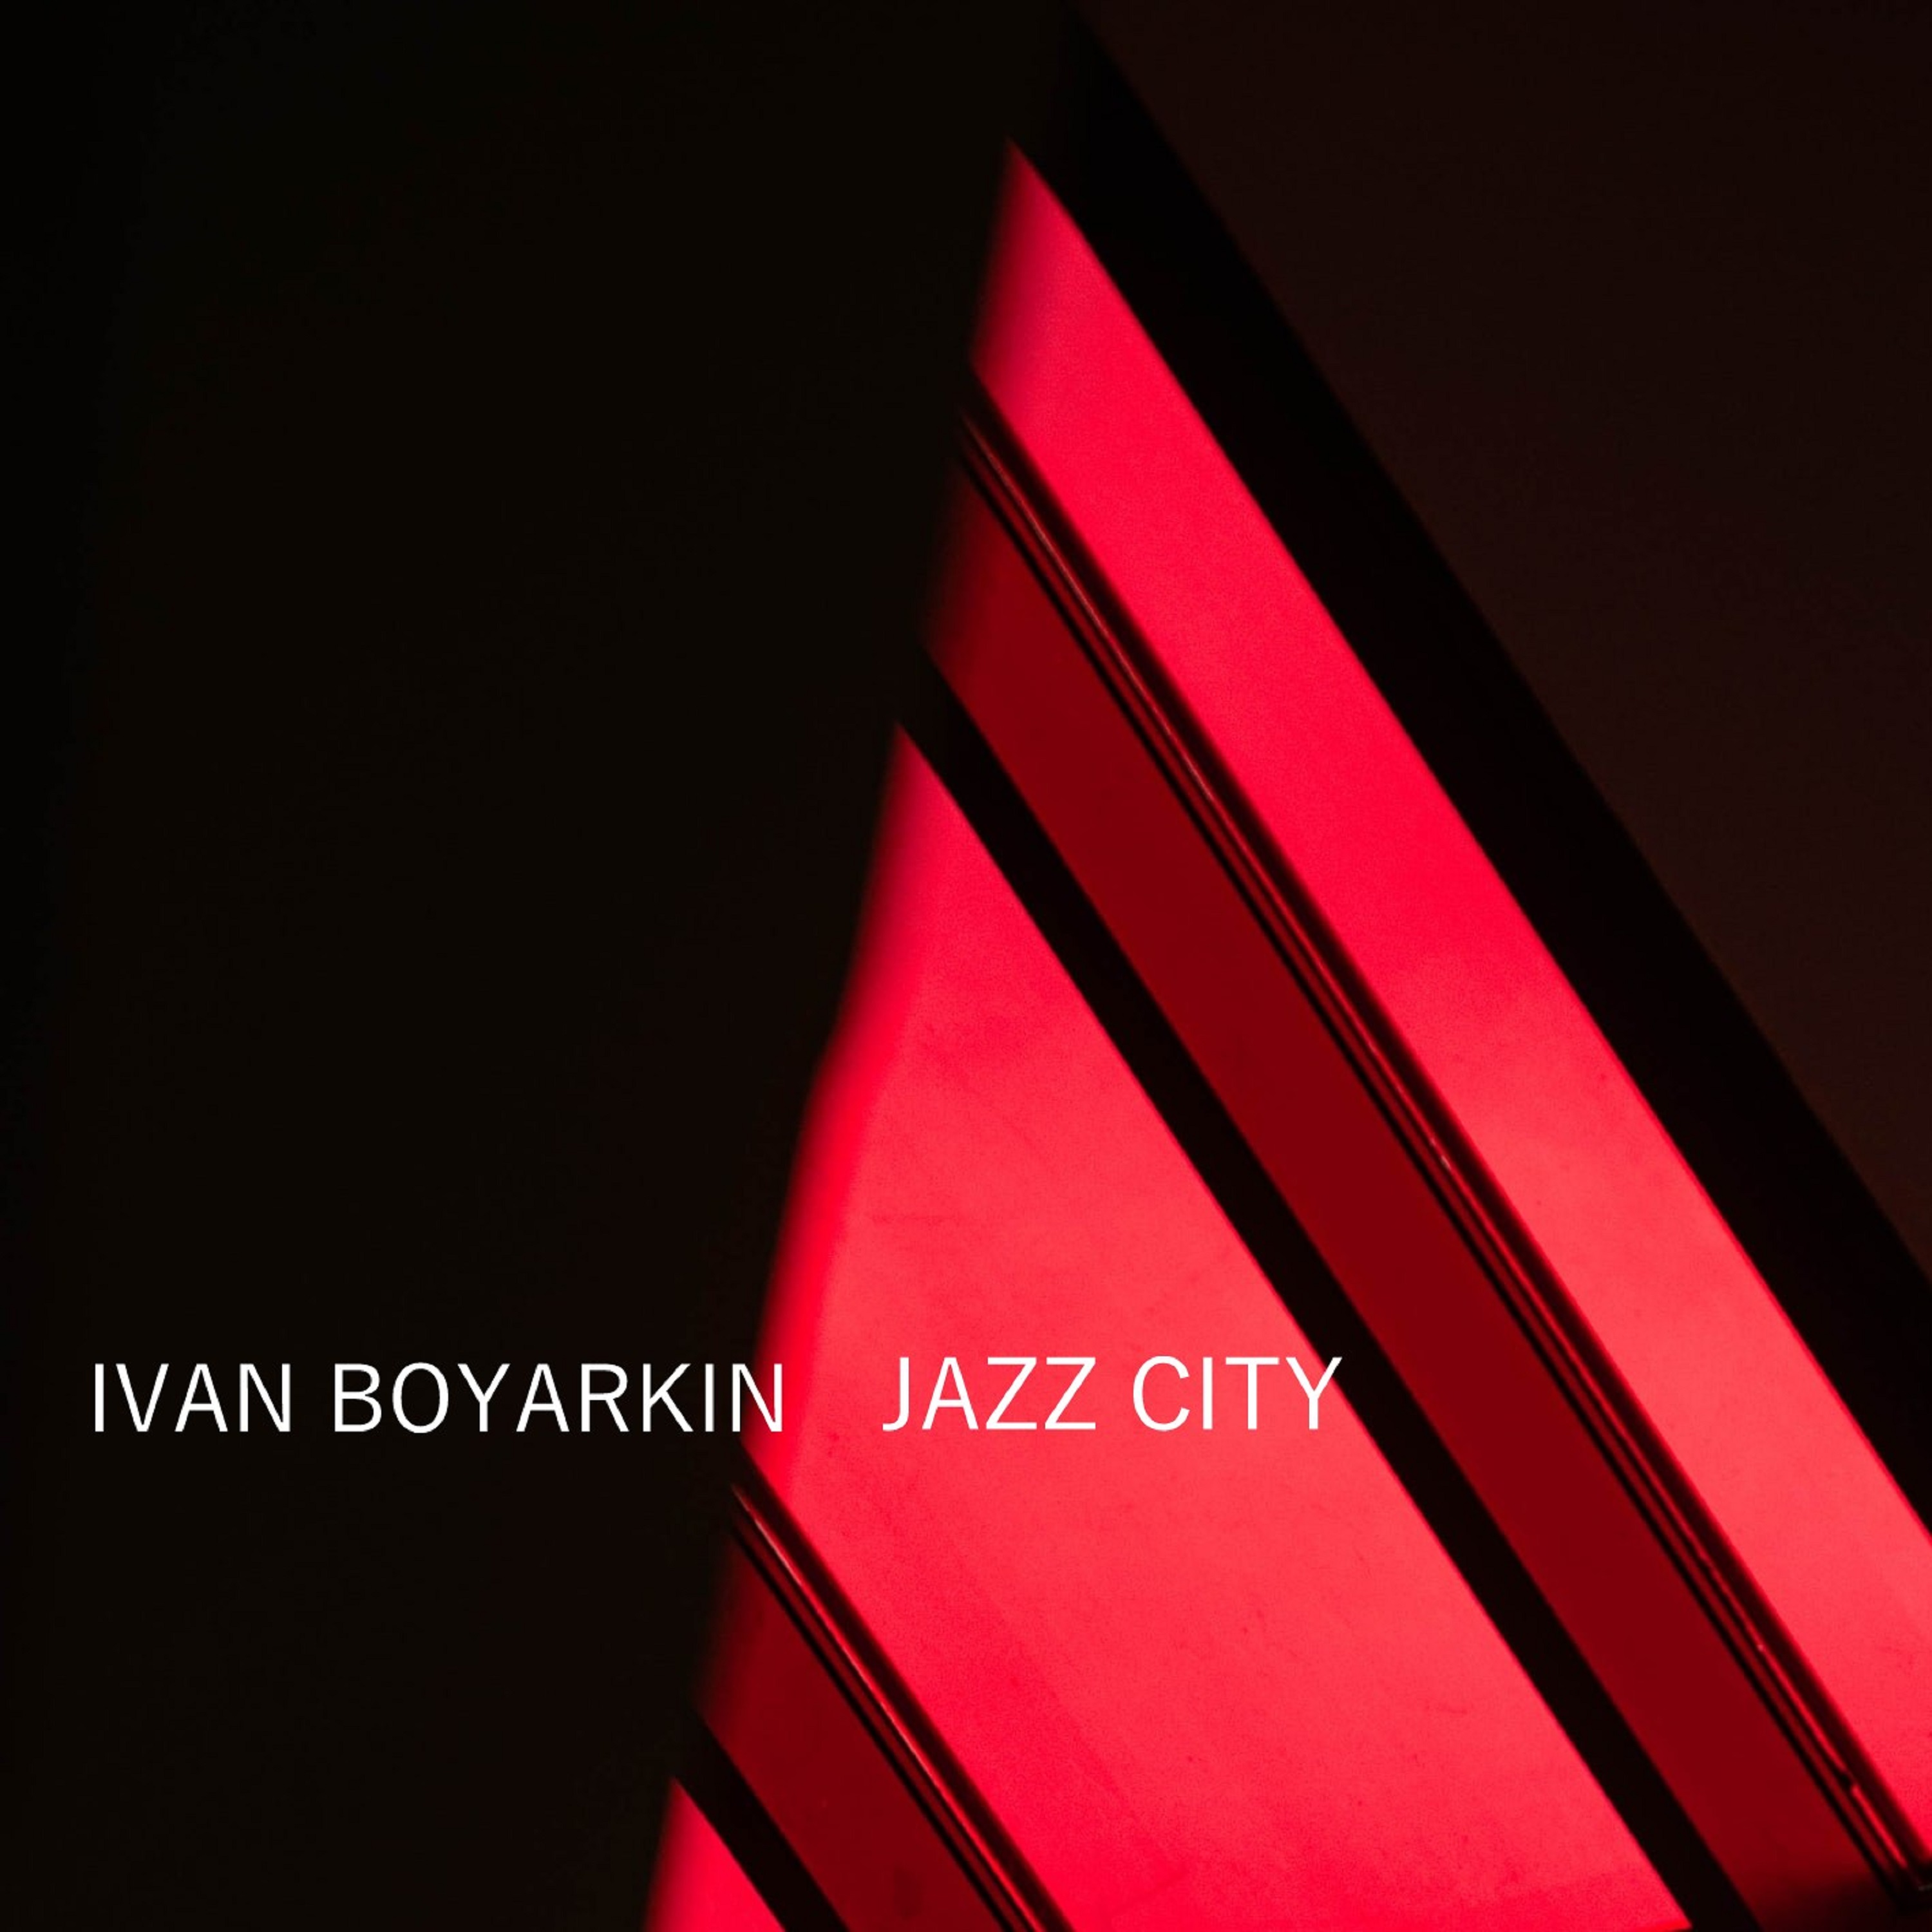 Ivan Boyarkin - Jazz City, Ivan Boyarkin - Jazz City (Original Mix), Ivan B...